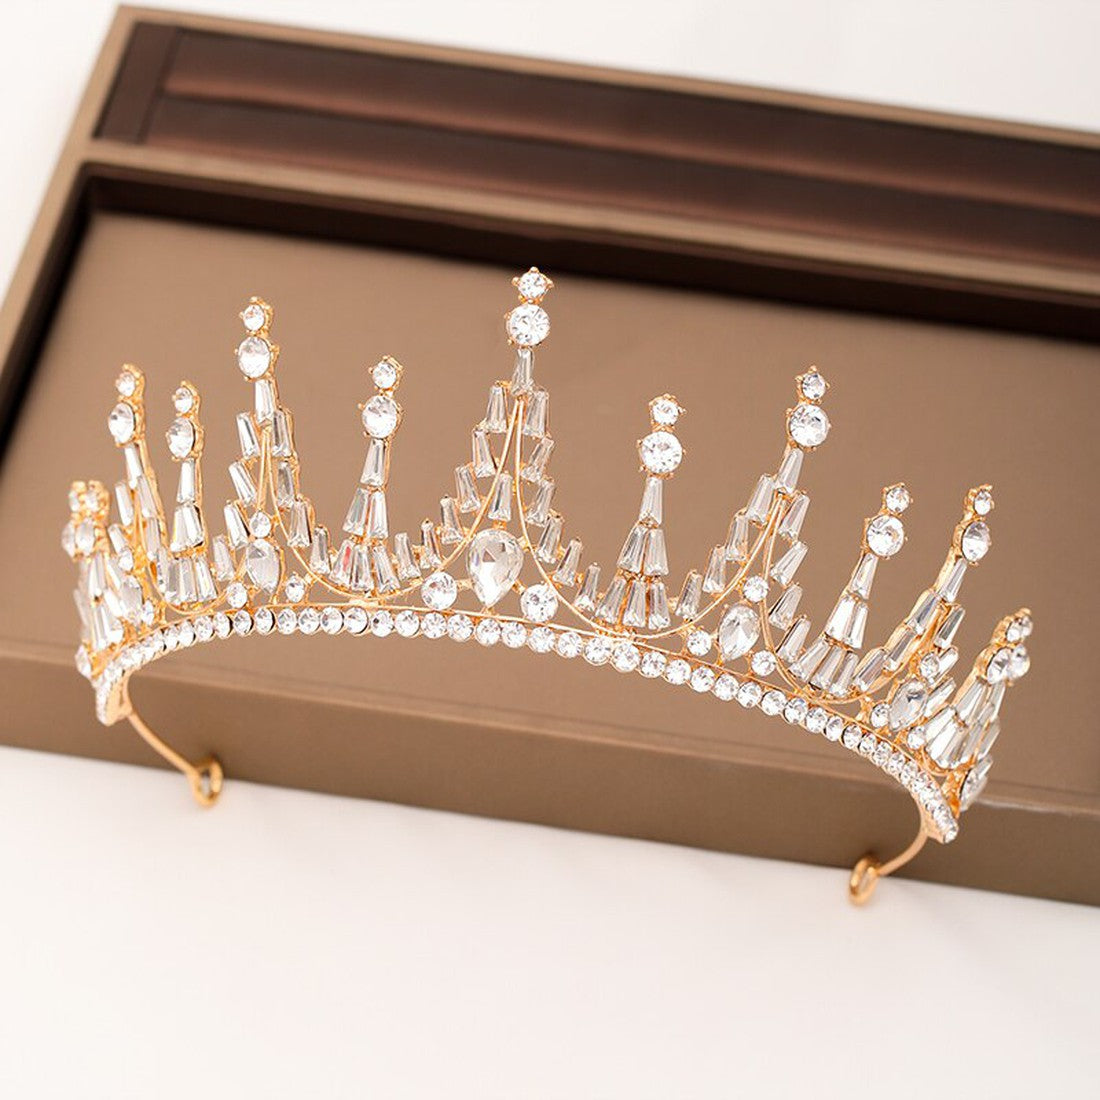 The New Wedding crown Woman Tiara Baroque crystal Rhinestone ornaments Wedding Bridal Crowns